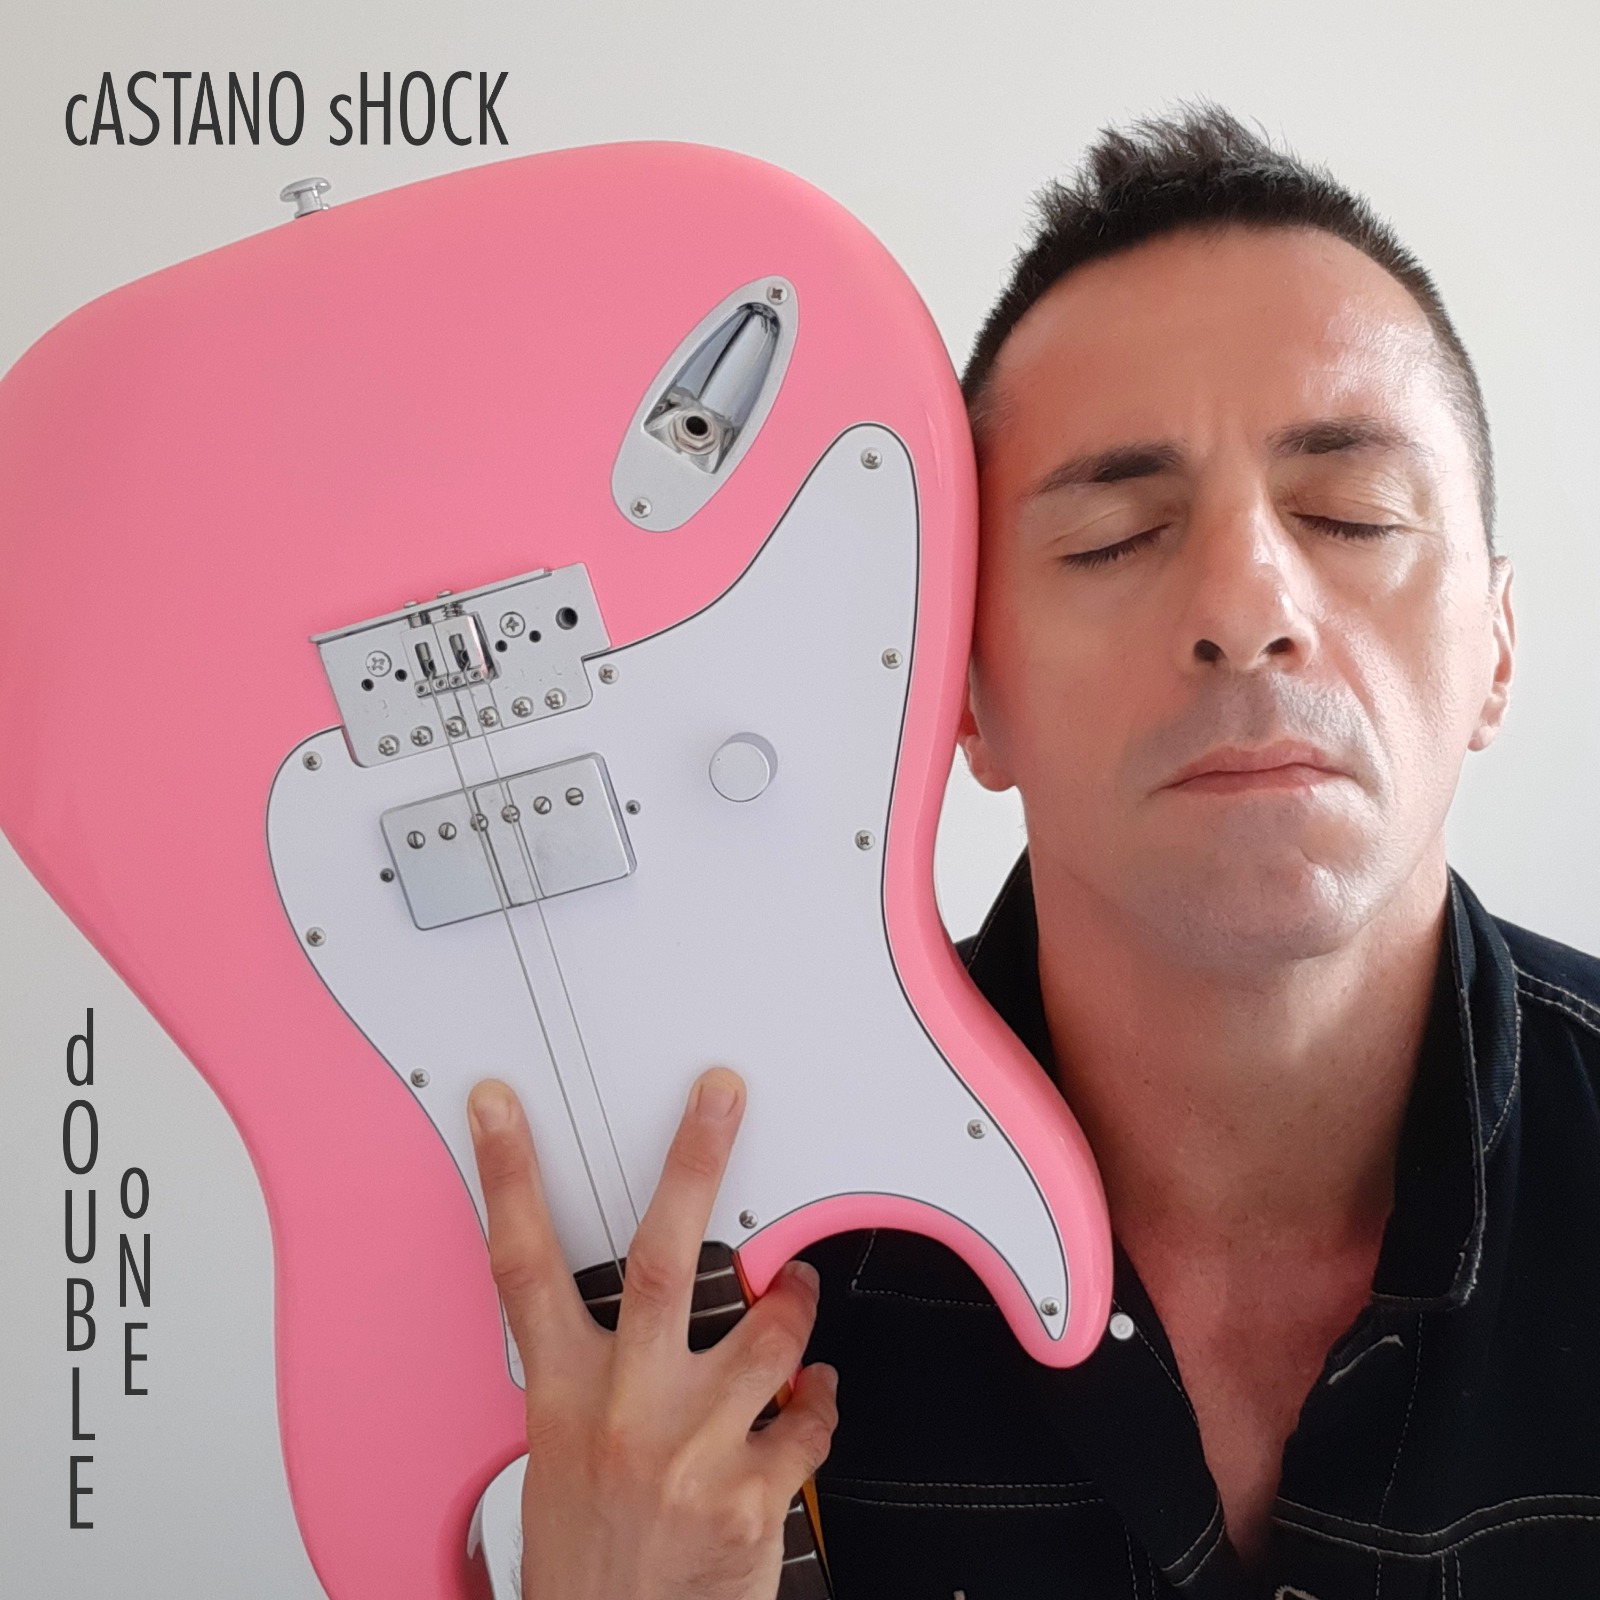 CASTANO SHOCK “Double One” è l’album basato sulla filosofia double one da cui è estratto il nuovo singolo “Oggi sto bene” 